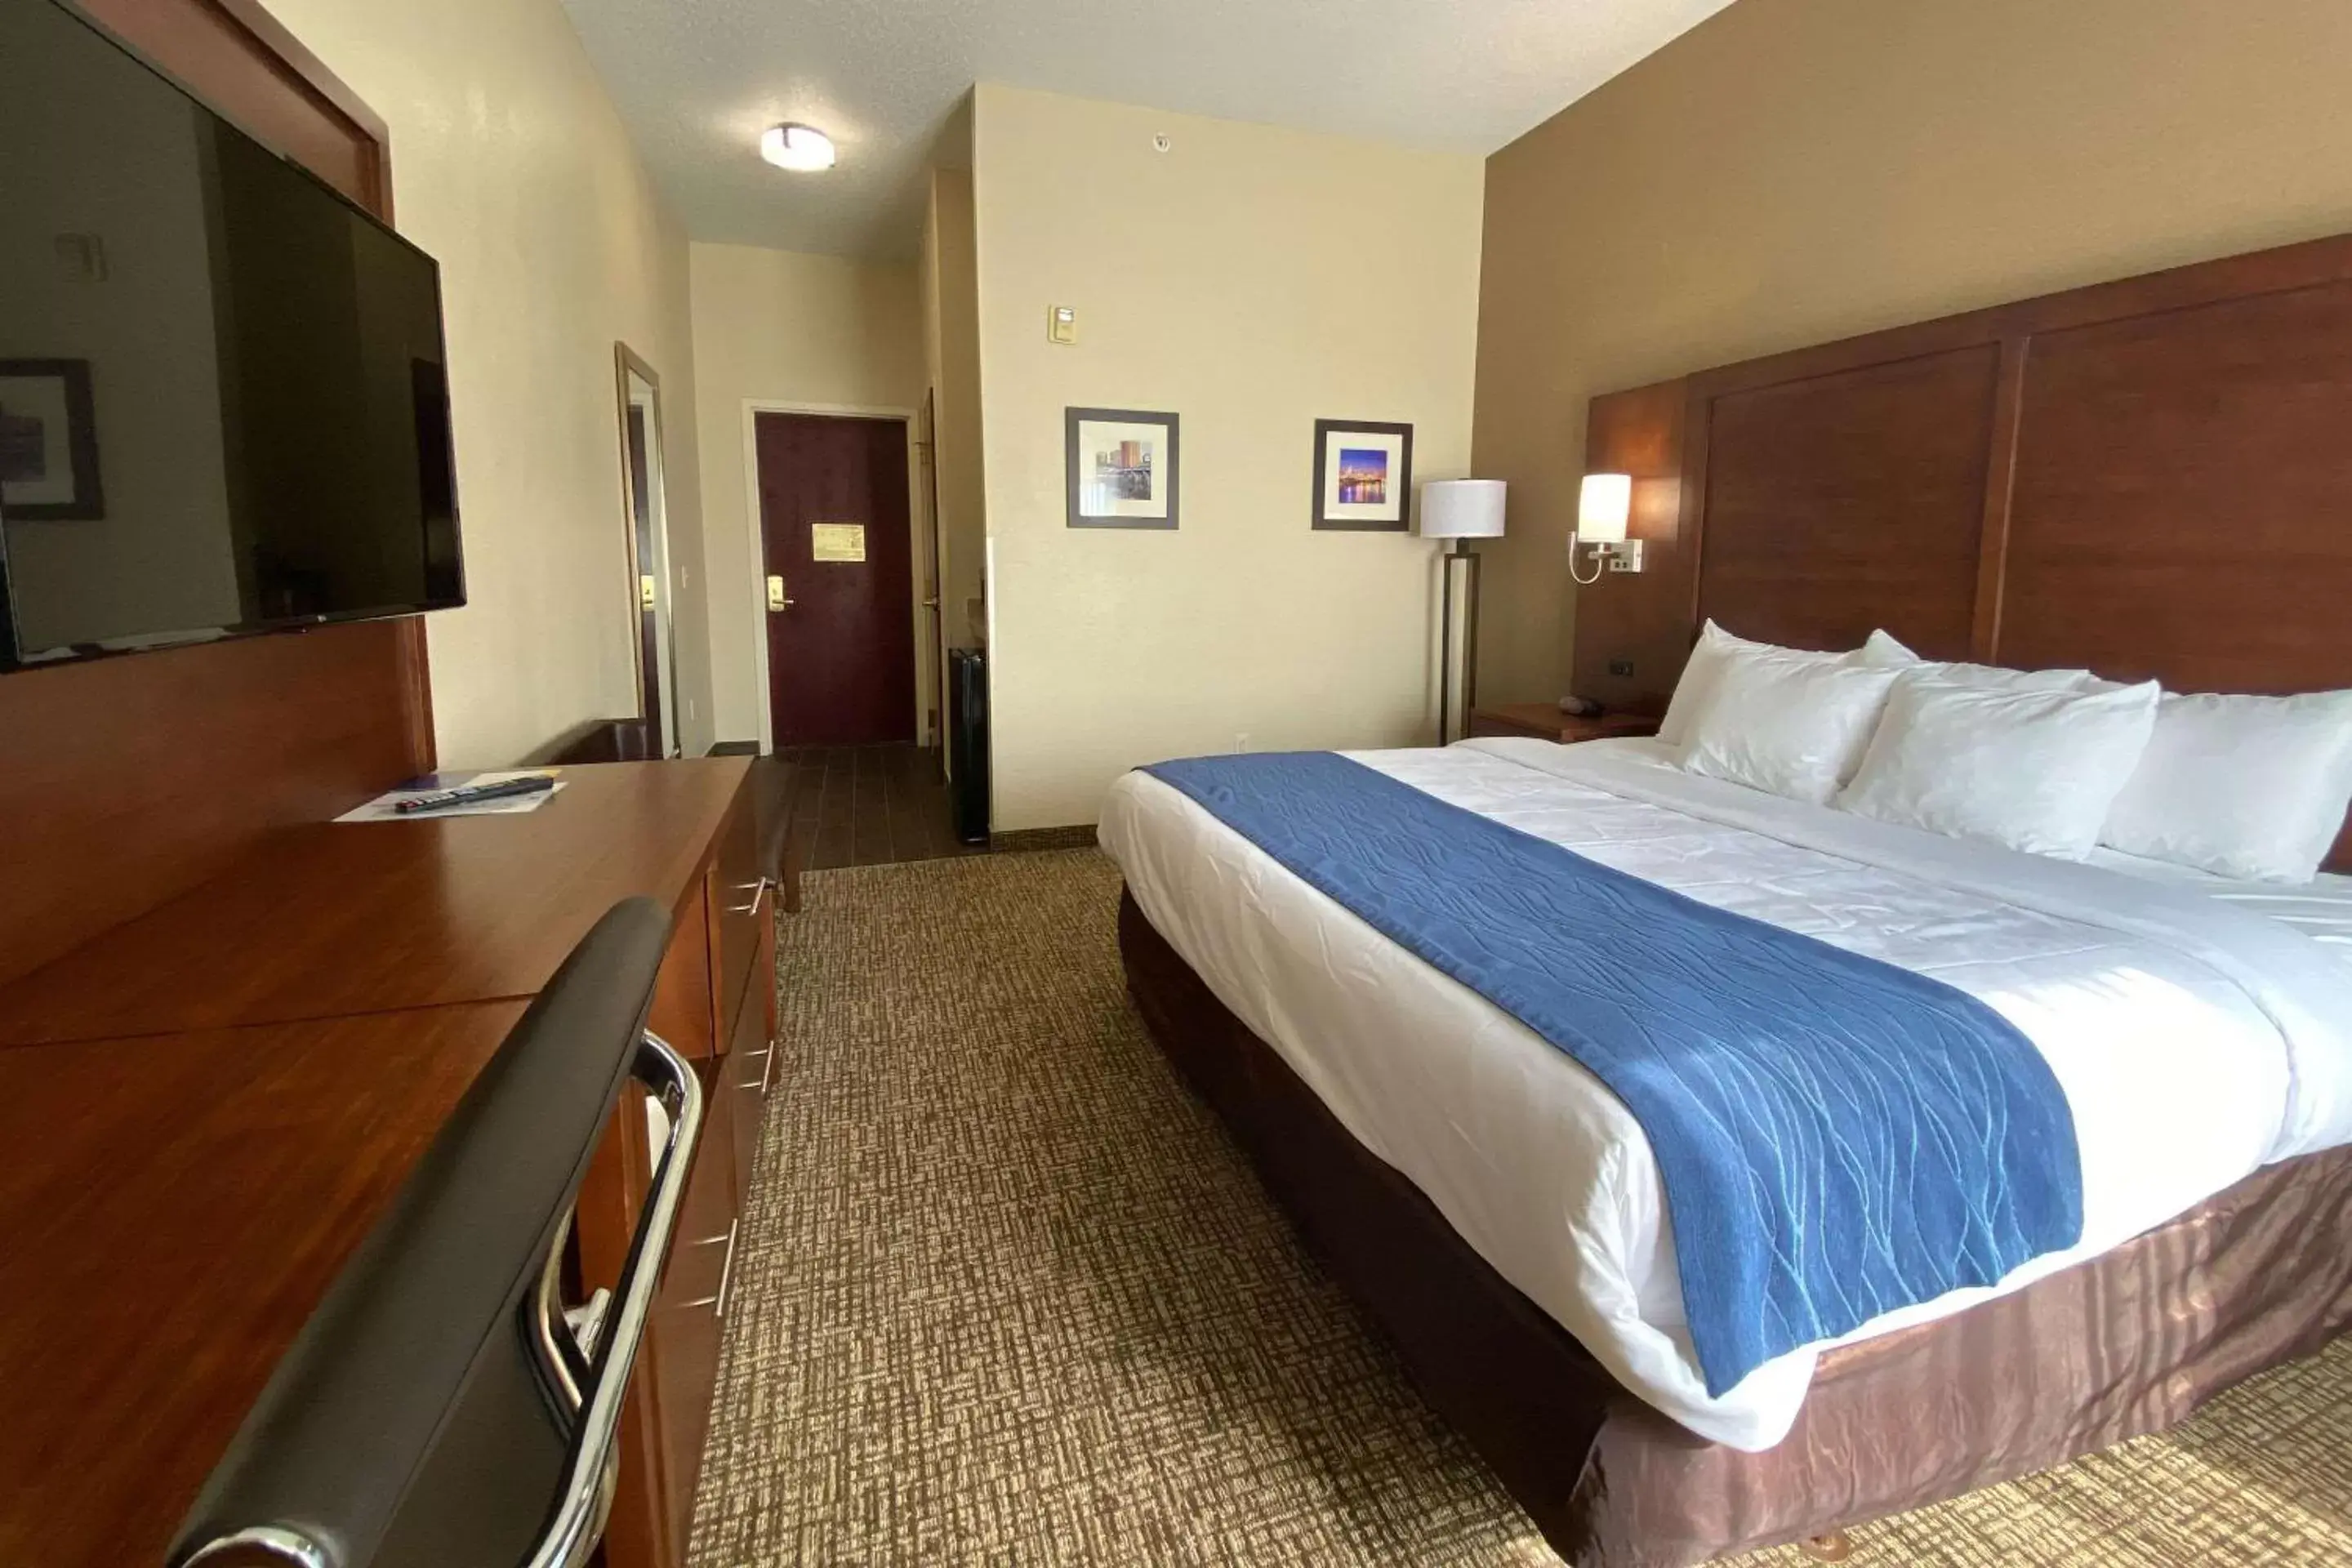 Bedroom, Bed in Comfort Inn East Windsor - Springfield